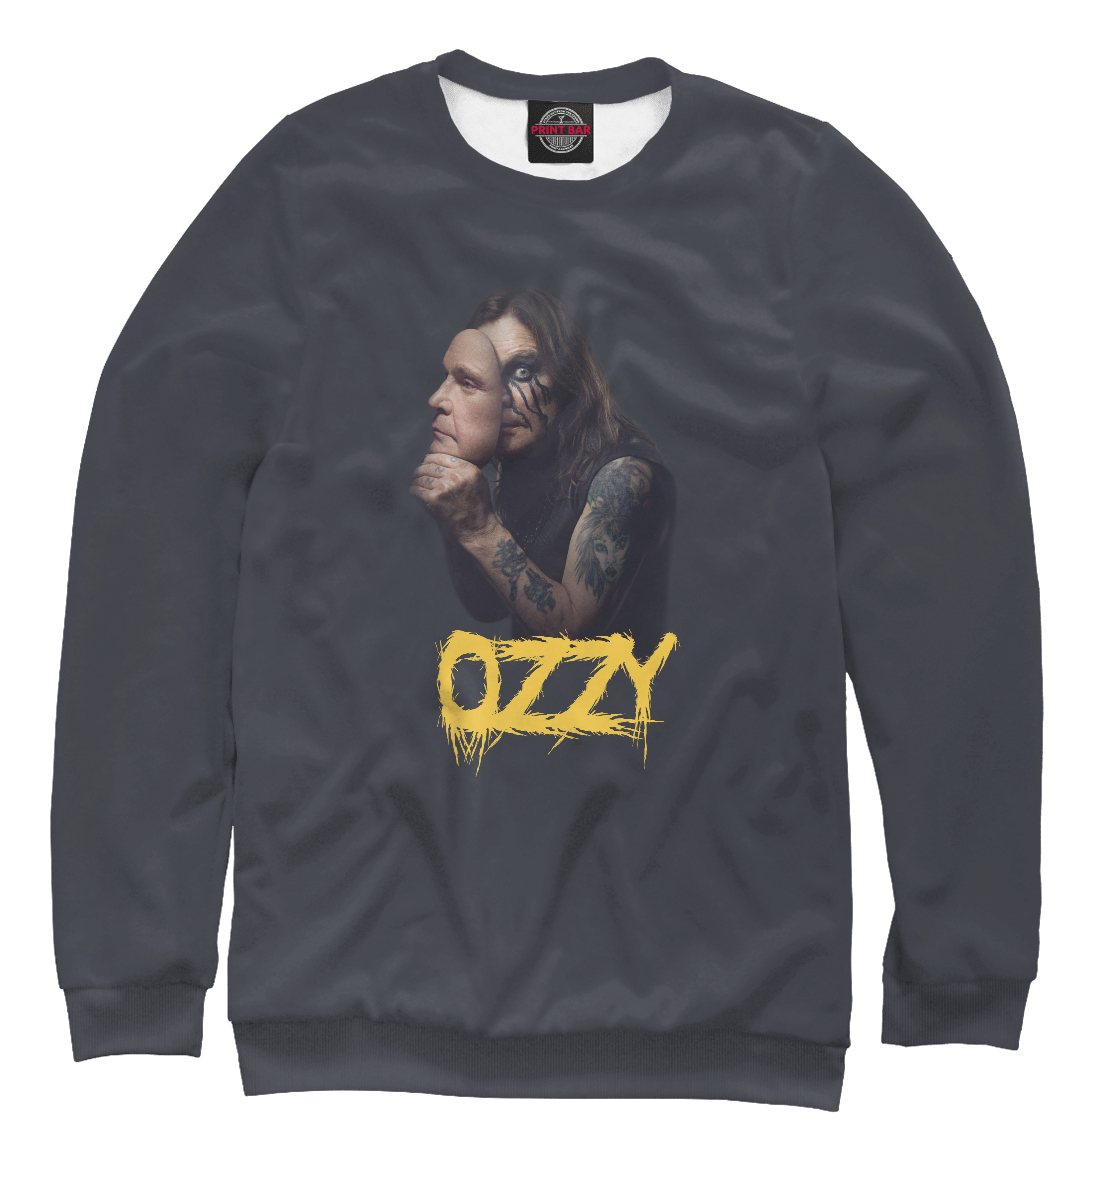 Свитшот Ozzy Osbourne OZO-617570-swi-1